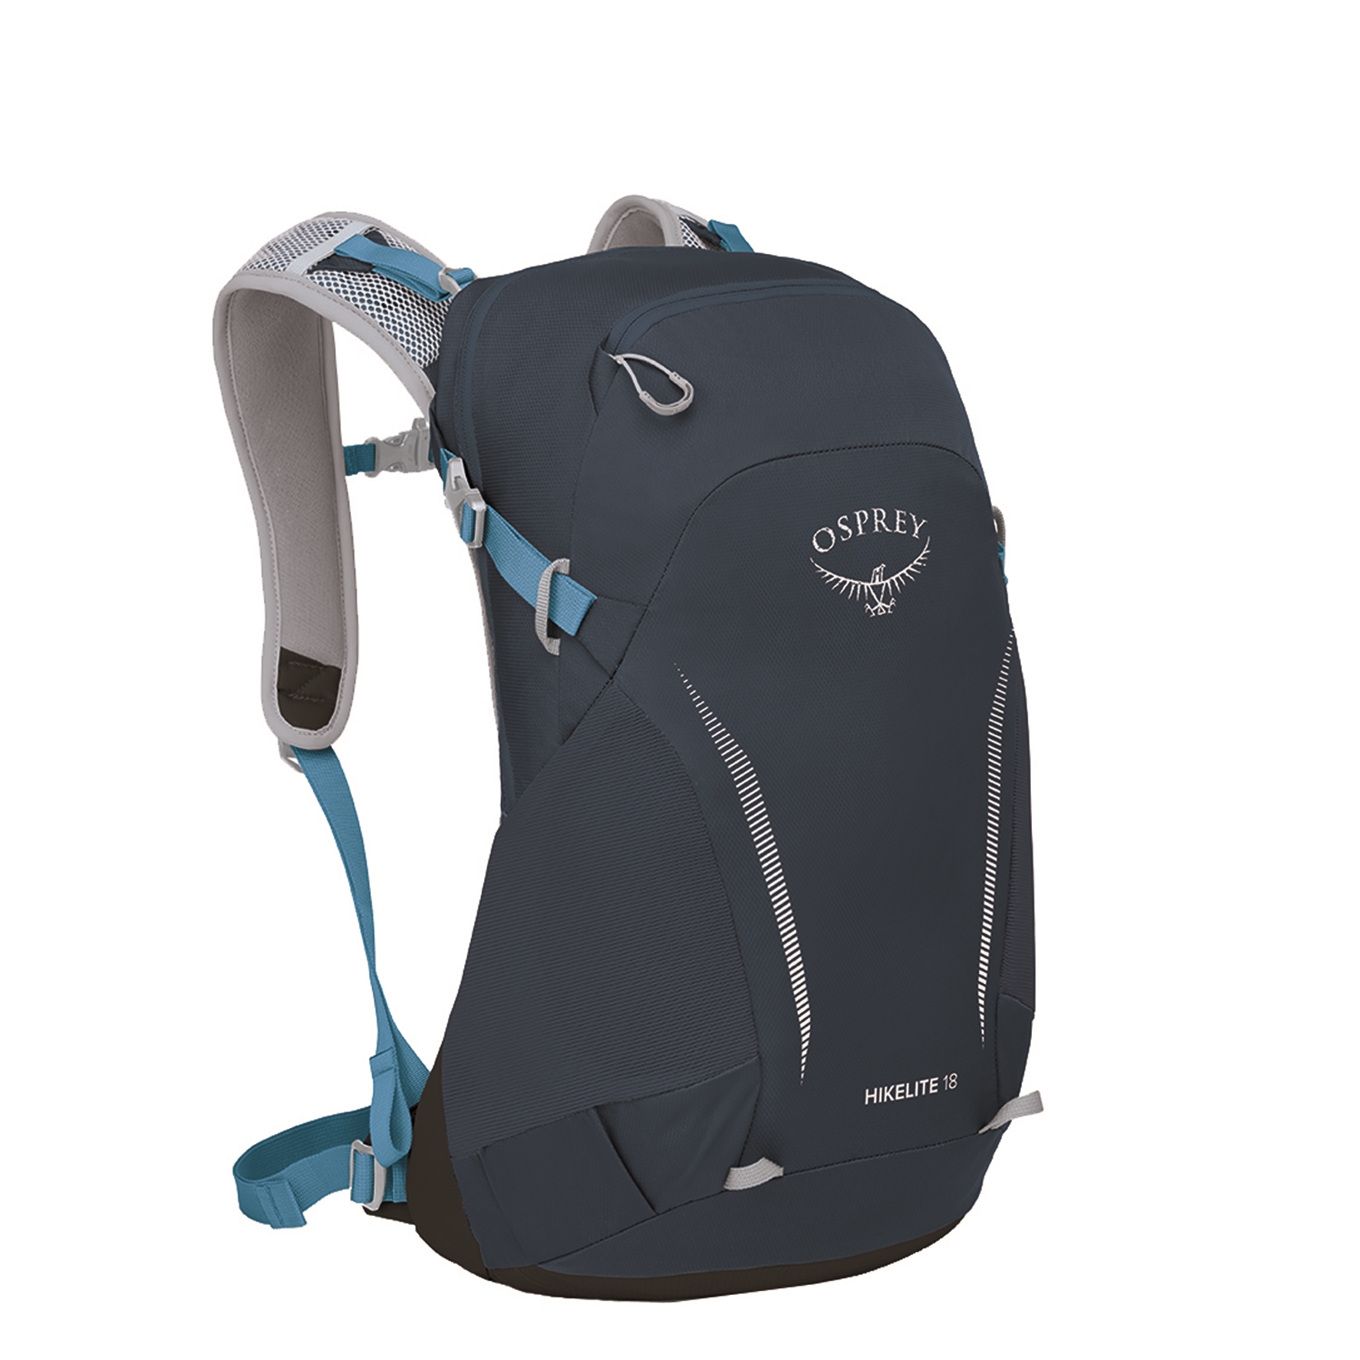 Osprey Hikelite 18 atlas blue backpack